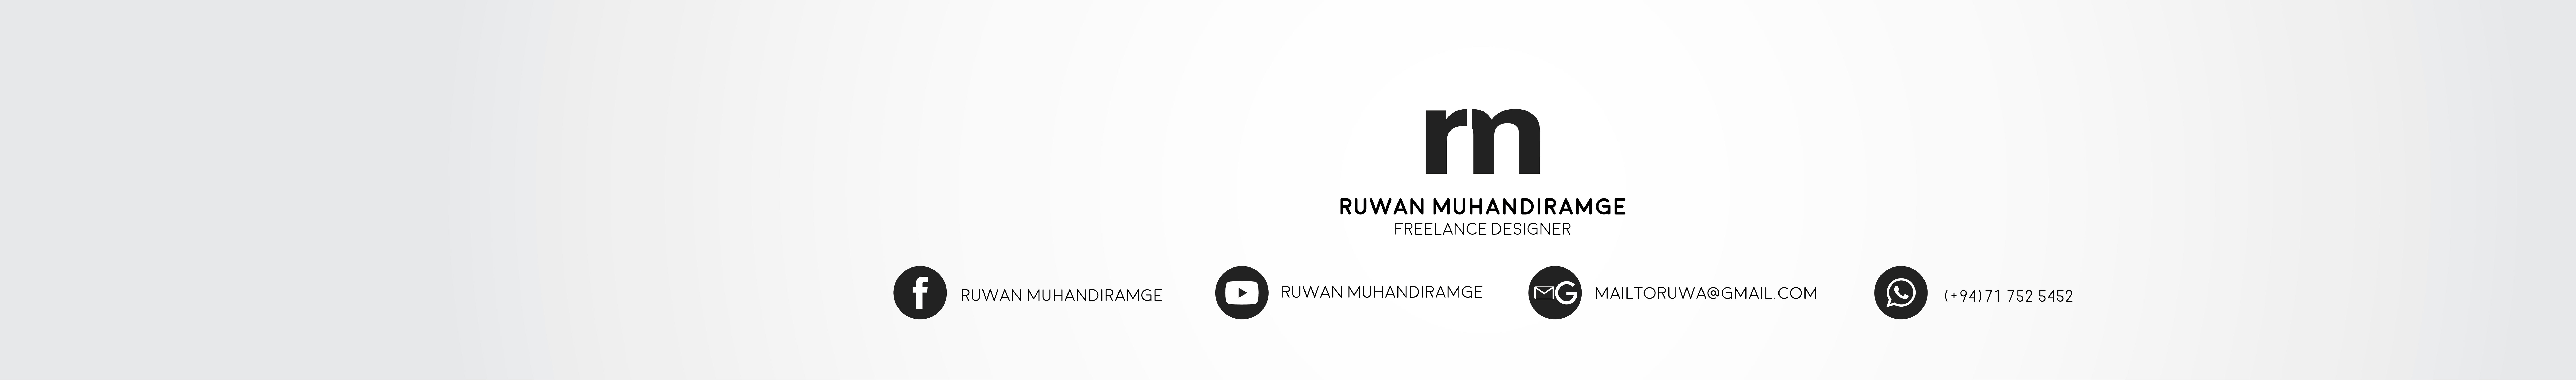 Ruwan Muhandiramges profilbanner